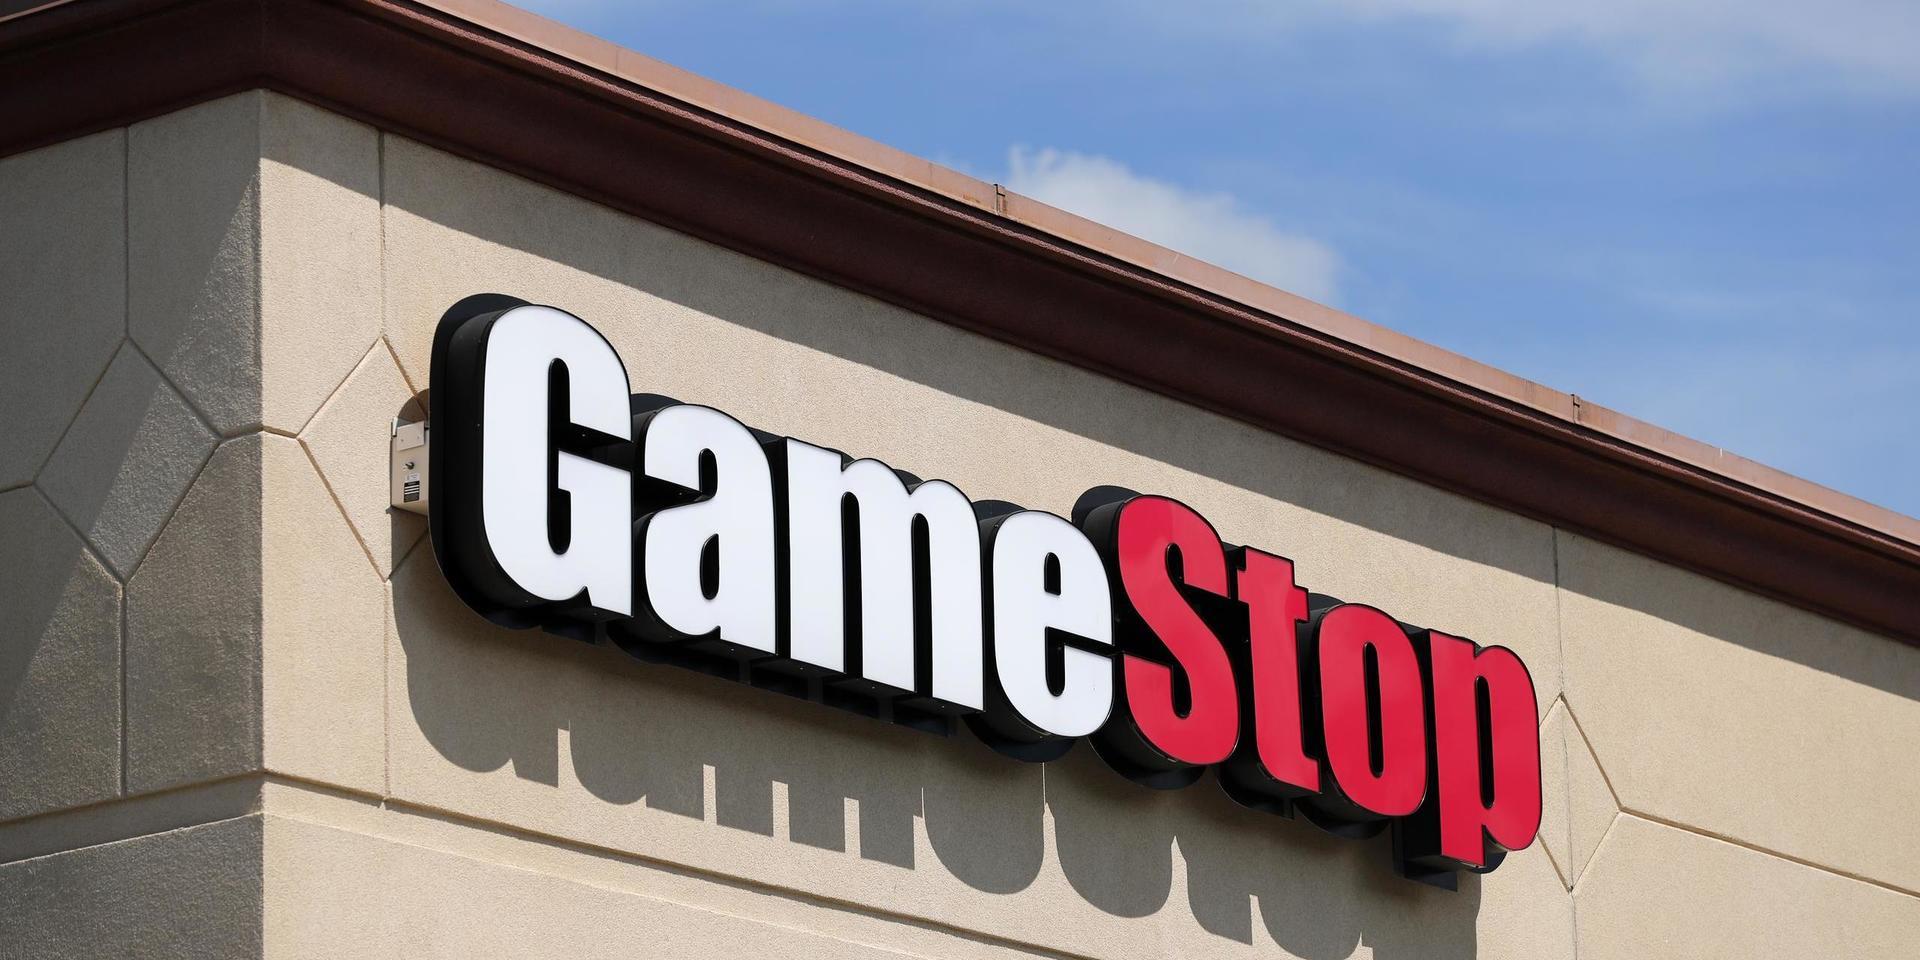 Dataspelshandlaren Gamestops aktie rusade i början av 2021 efter att småsparare på internetforum gått samman för att driva upp priset. 